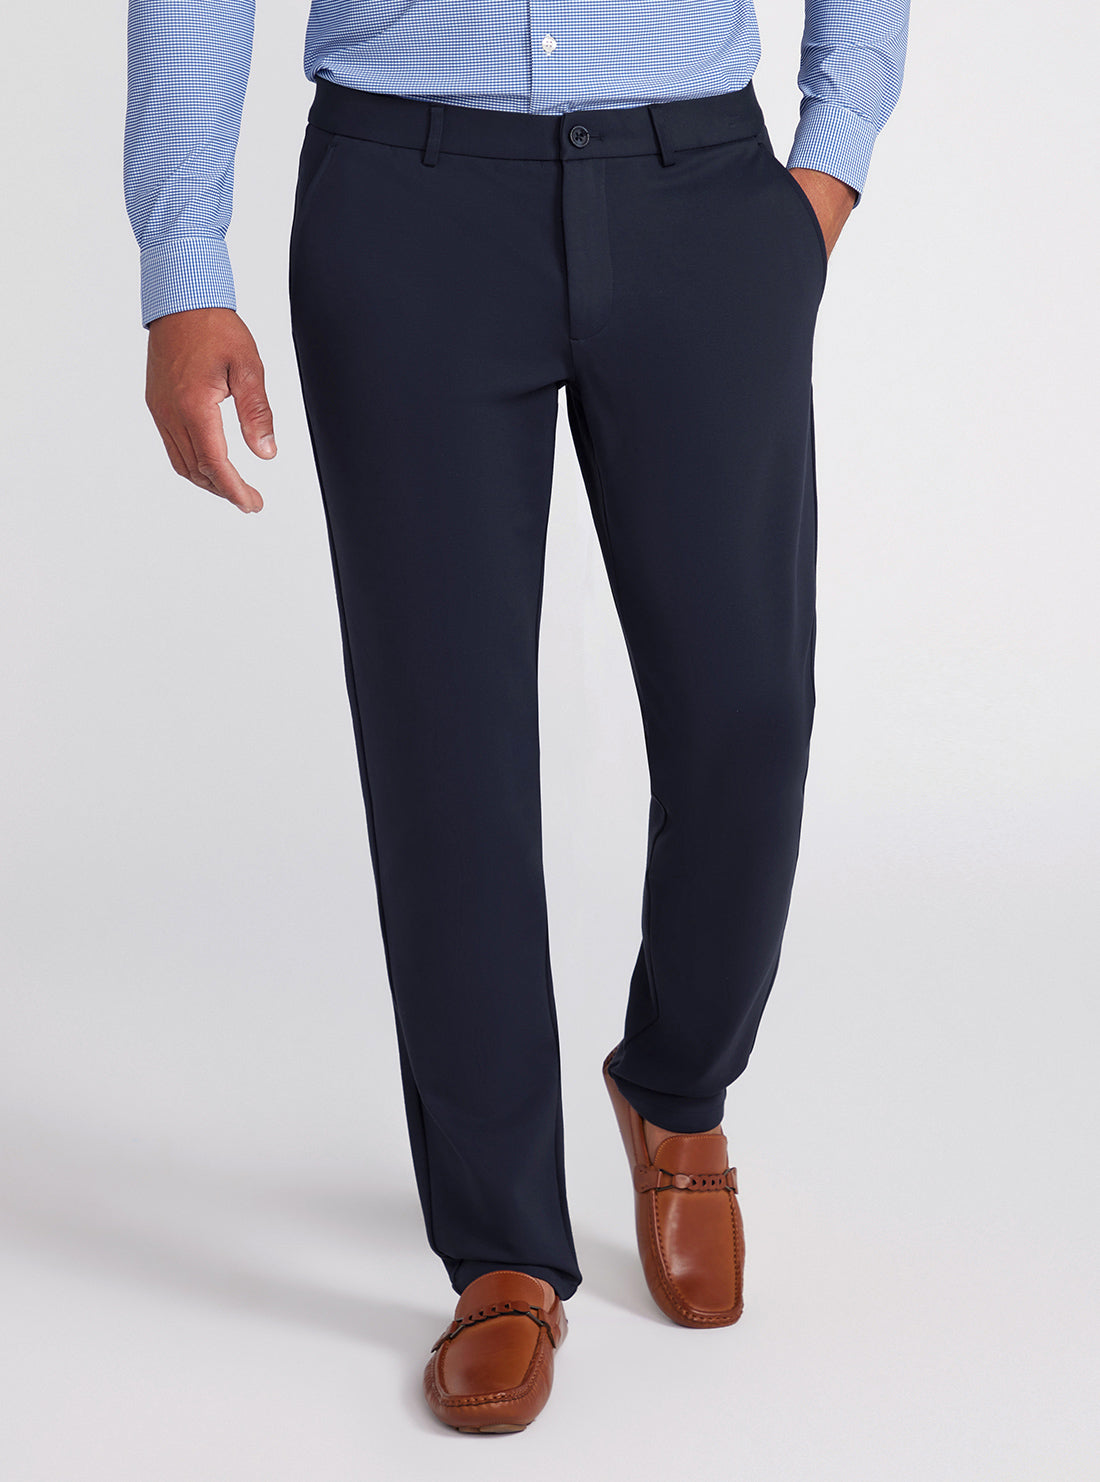 Navy Blue Myron Dress Pants | GUESS Men's Apparel | front view alt